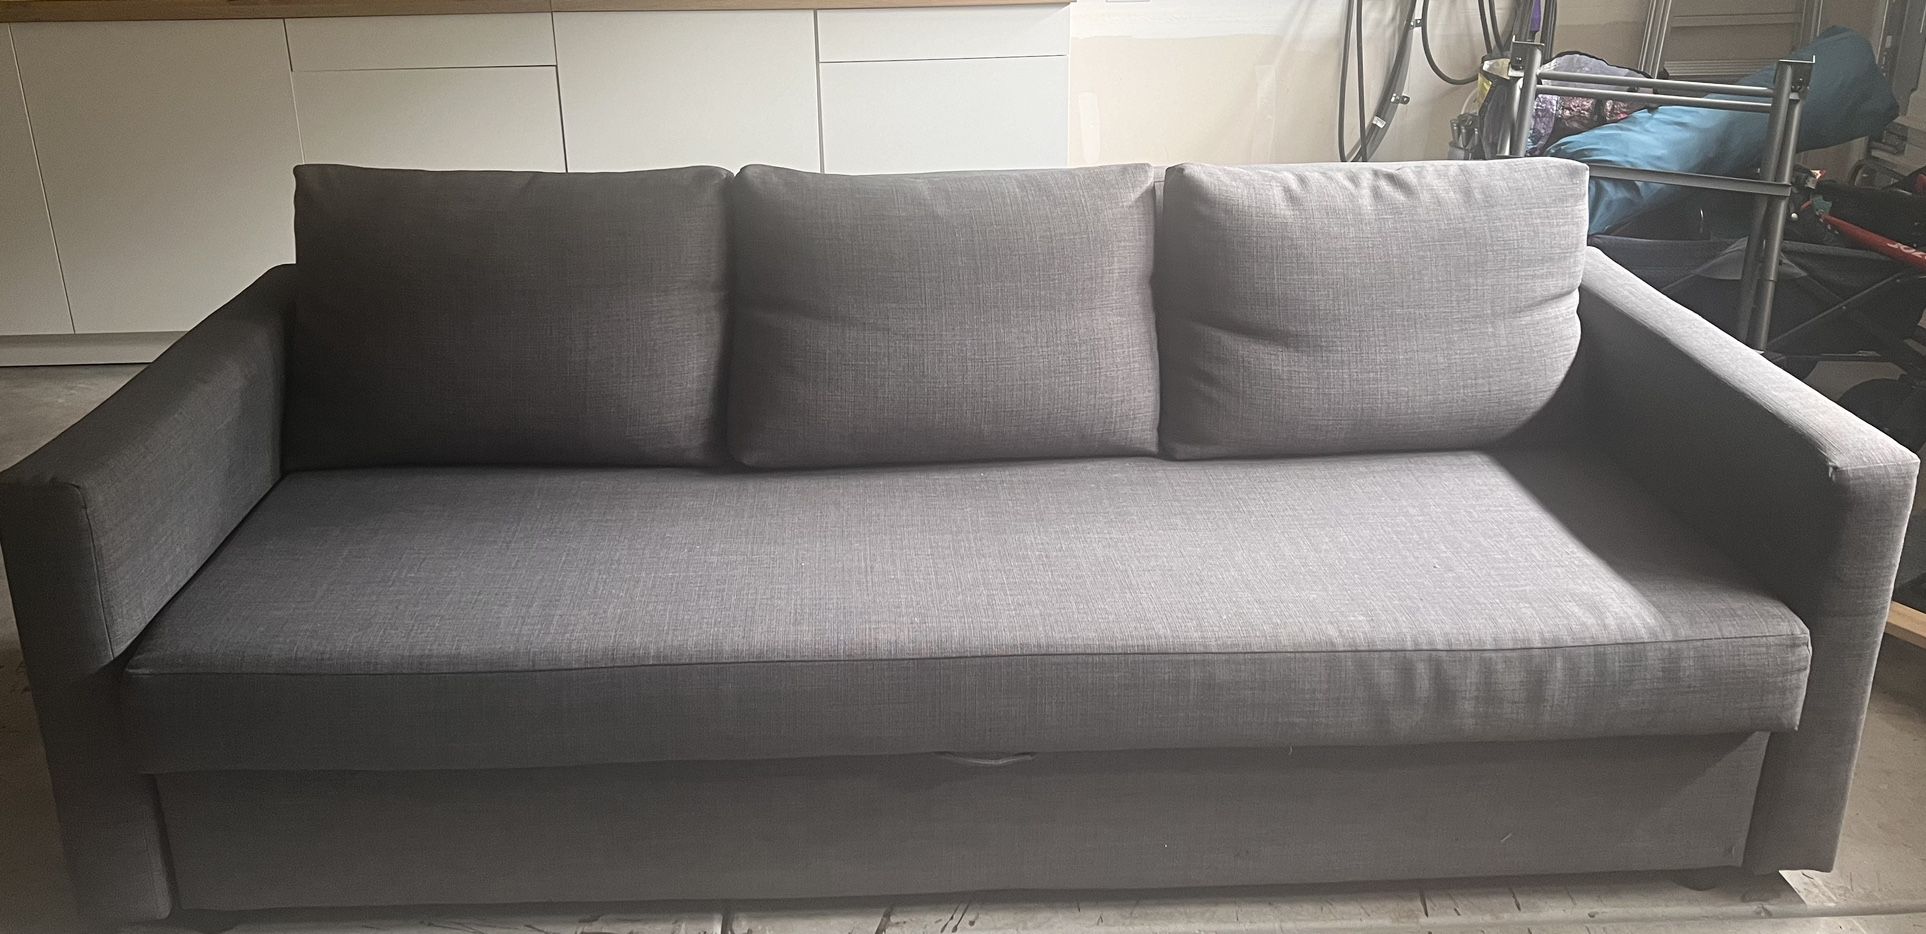 Ikea Friheten Model Couch